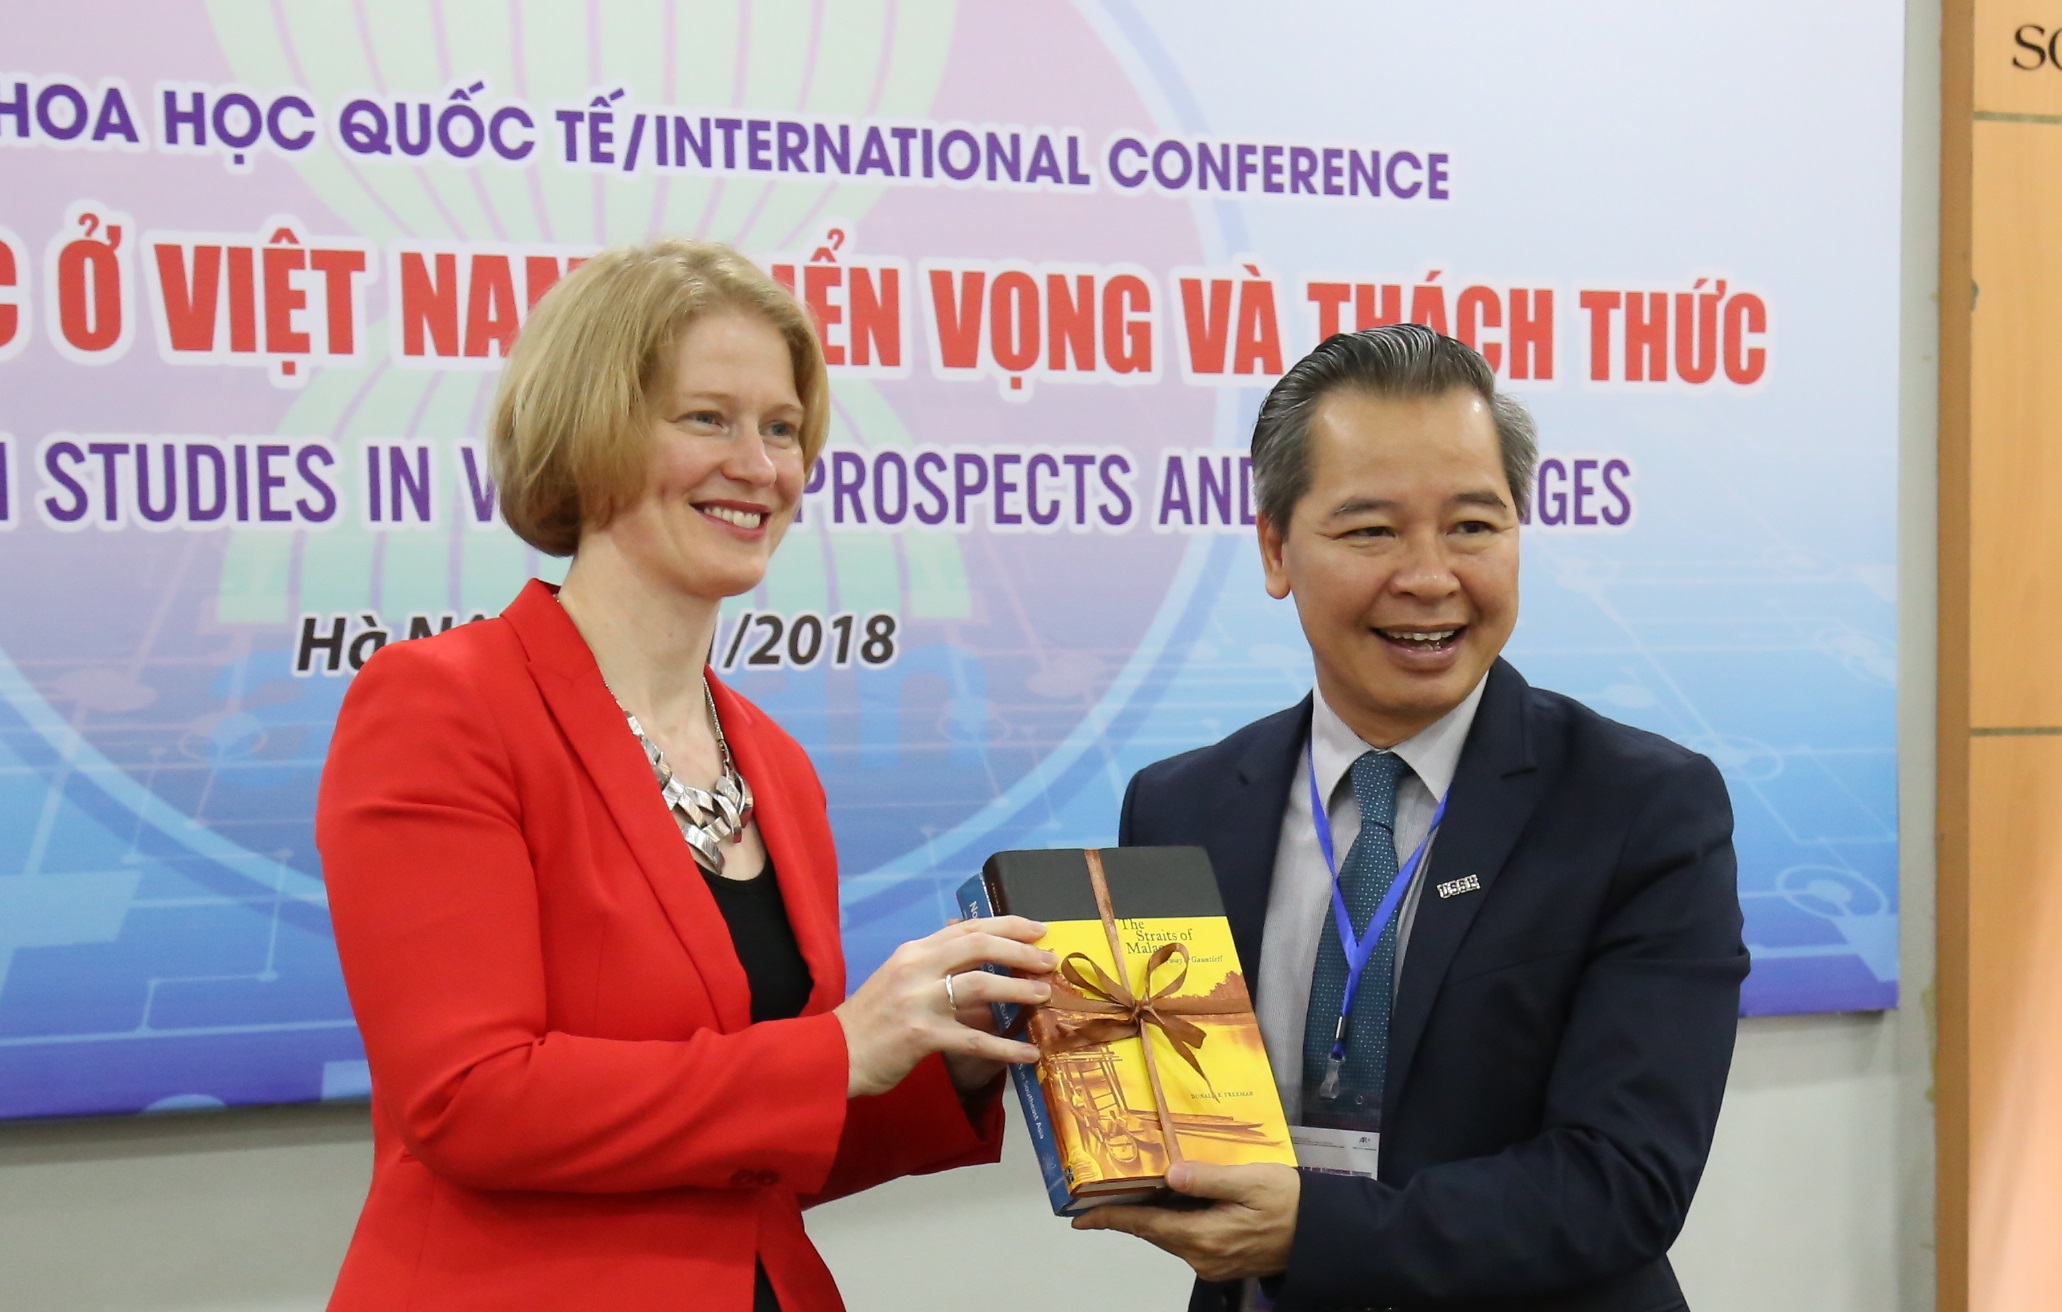 Trao tặng hơn 3.000 cuốn sách về Đông Nam Á học của cố GS. Nicholas Tarling